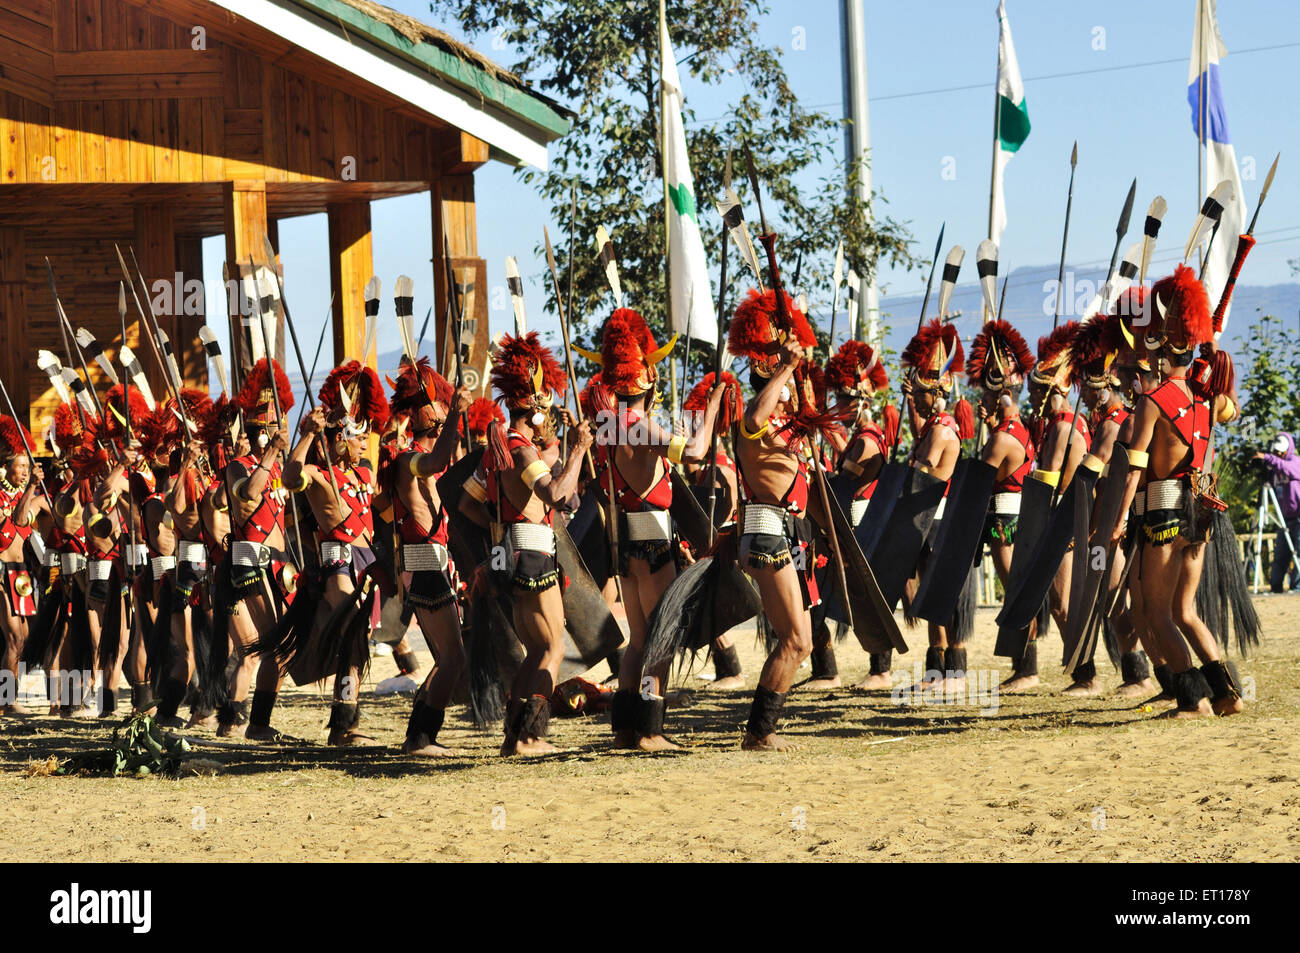 Festa di danza della tribù Naga hornbill, villaggio di Kohima Kisama, Nagaland, India nordorientale, tribali indiani, danza asiatica Foto Stock